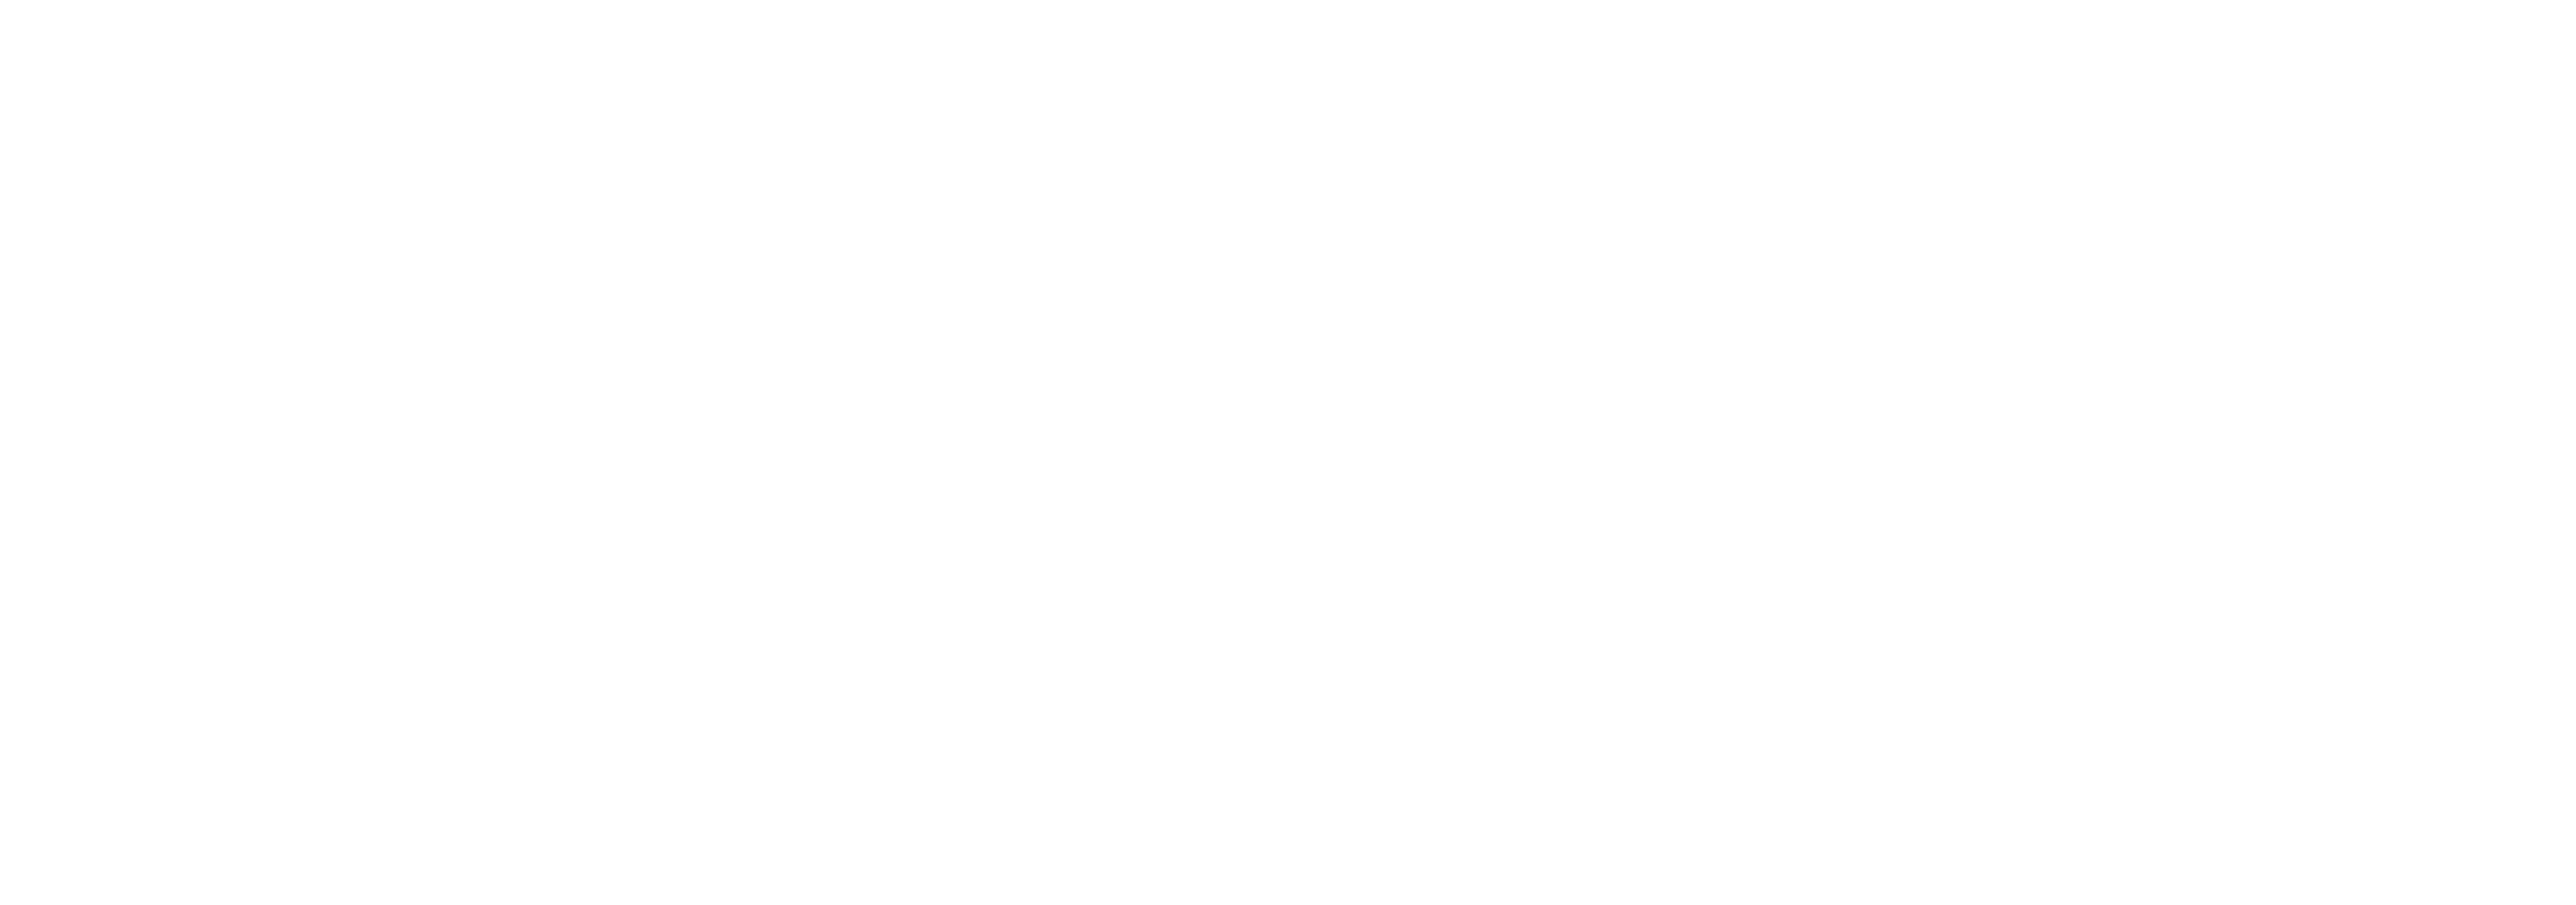 Rivera Group